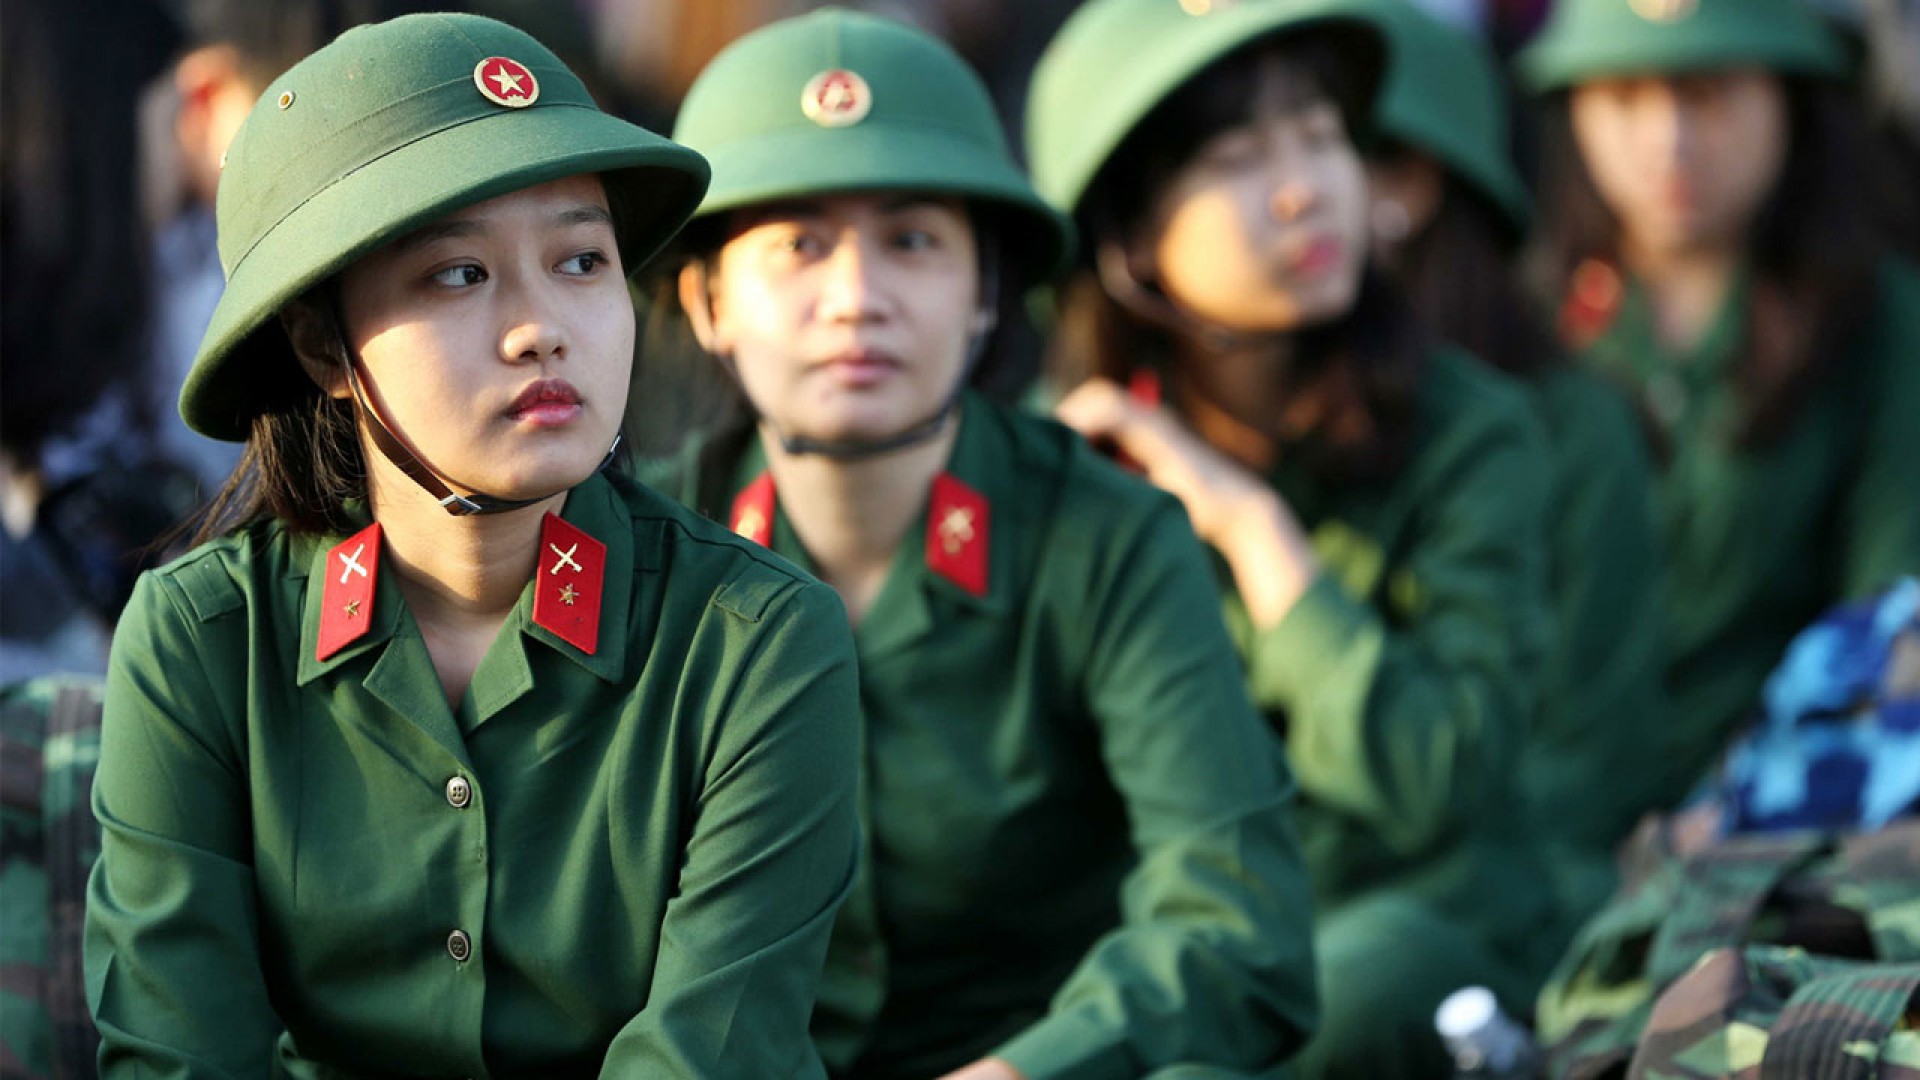 Tuyển sinh 2019: Muốn trở thành nữ sĩ quan quân đội thì học trường nào?